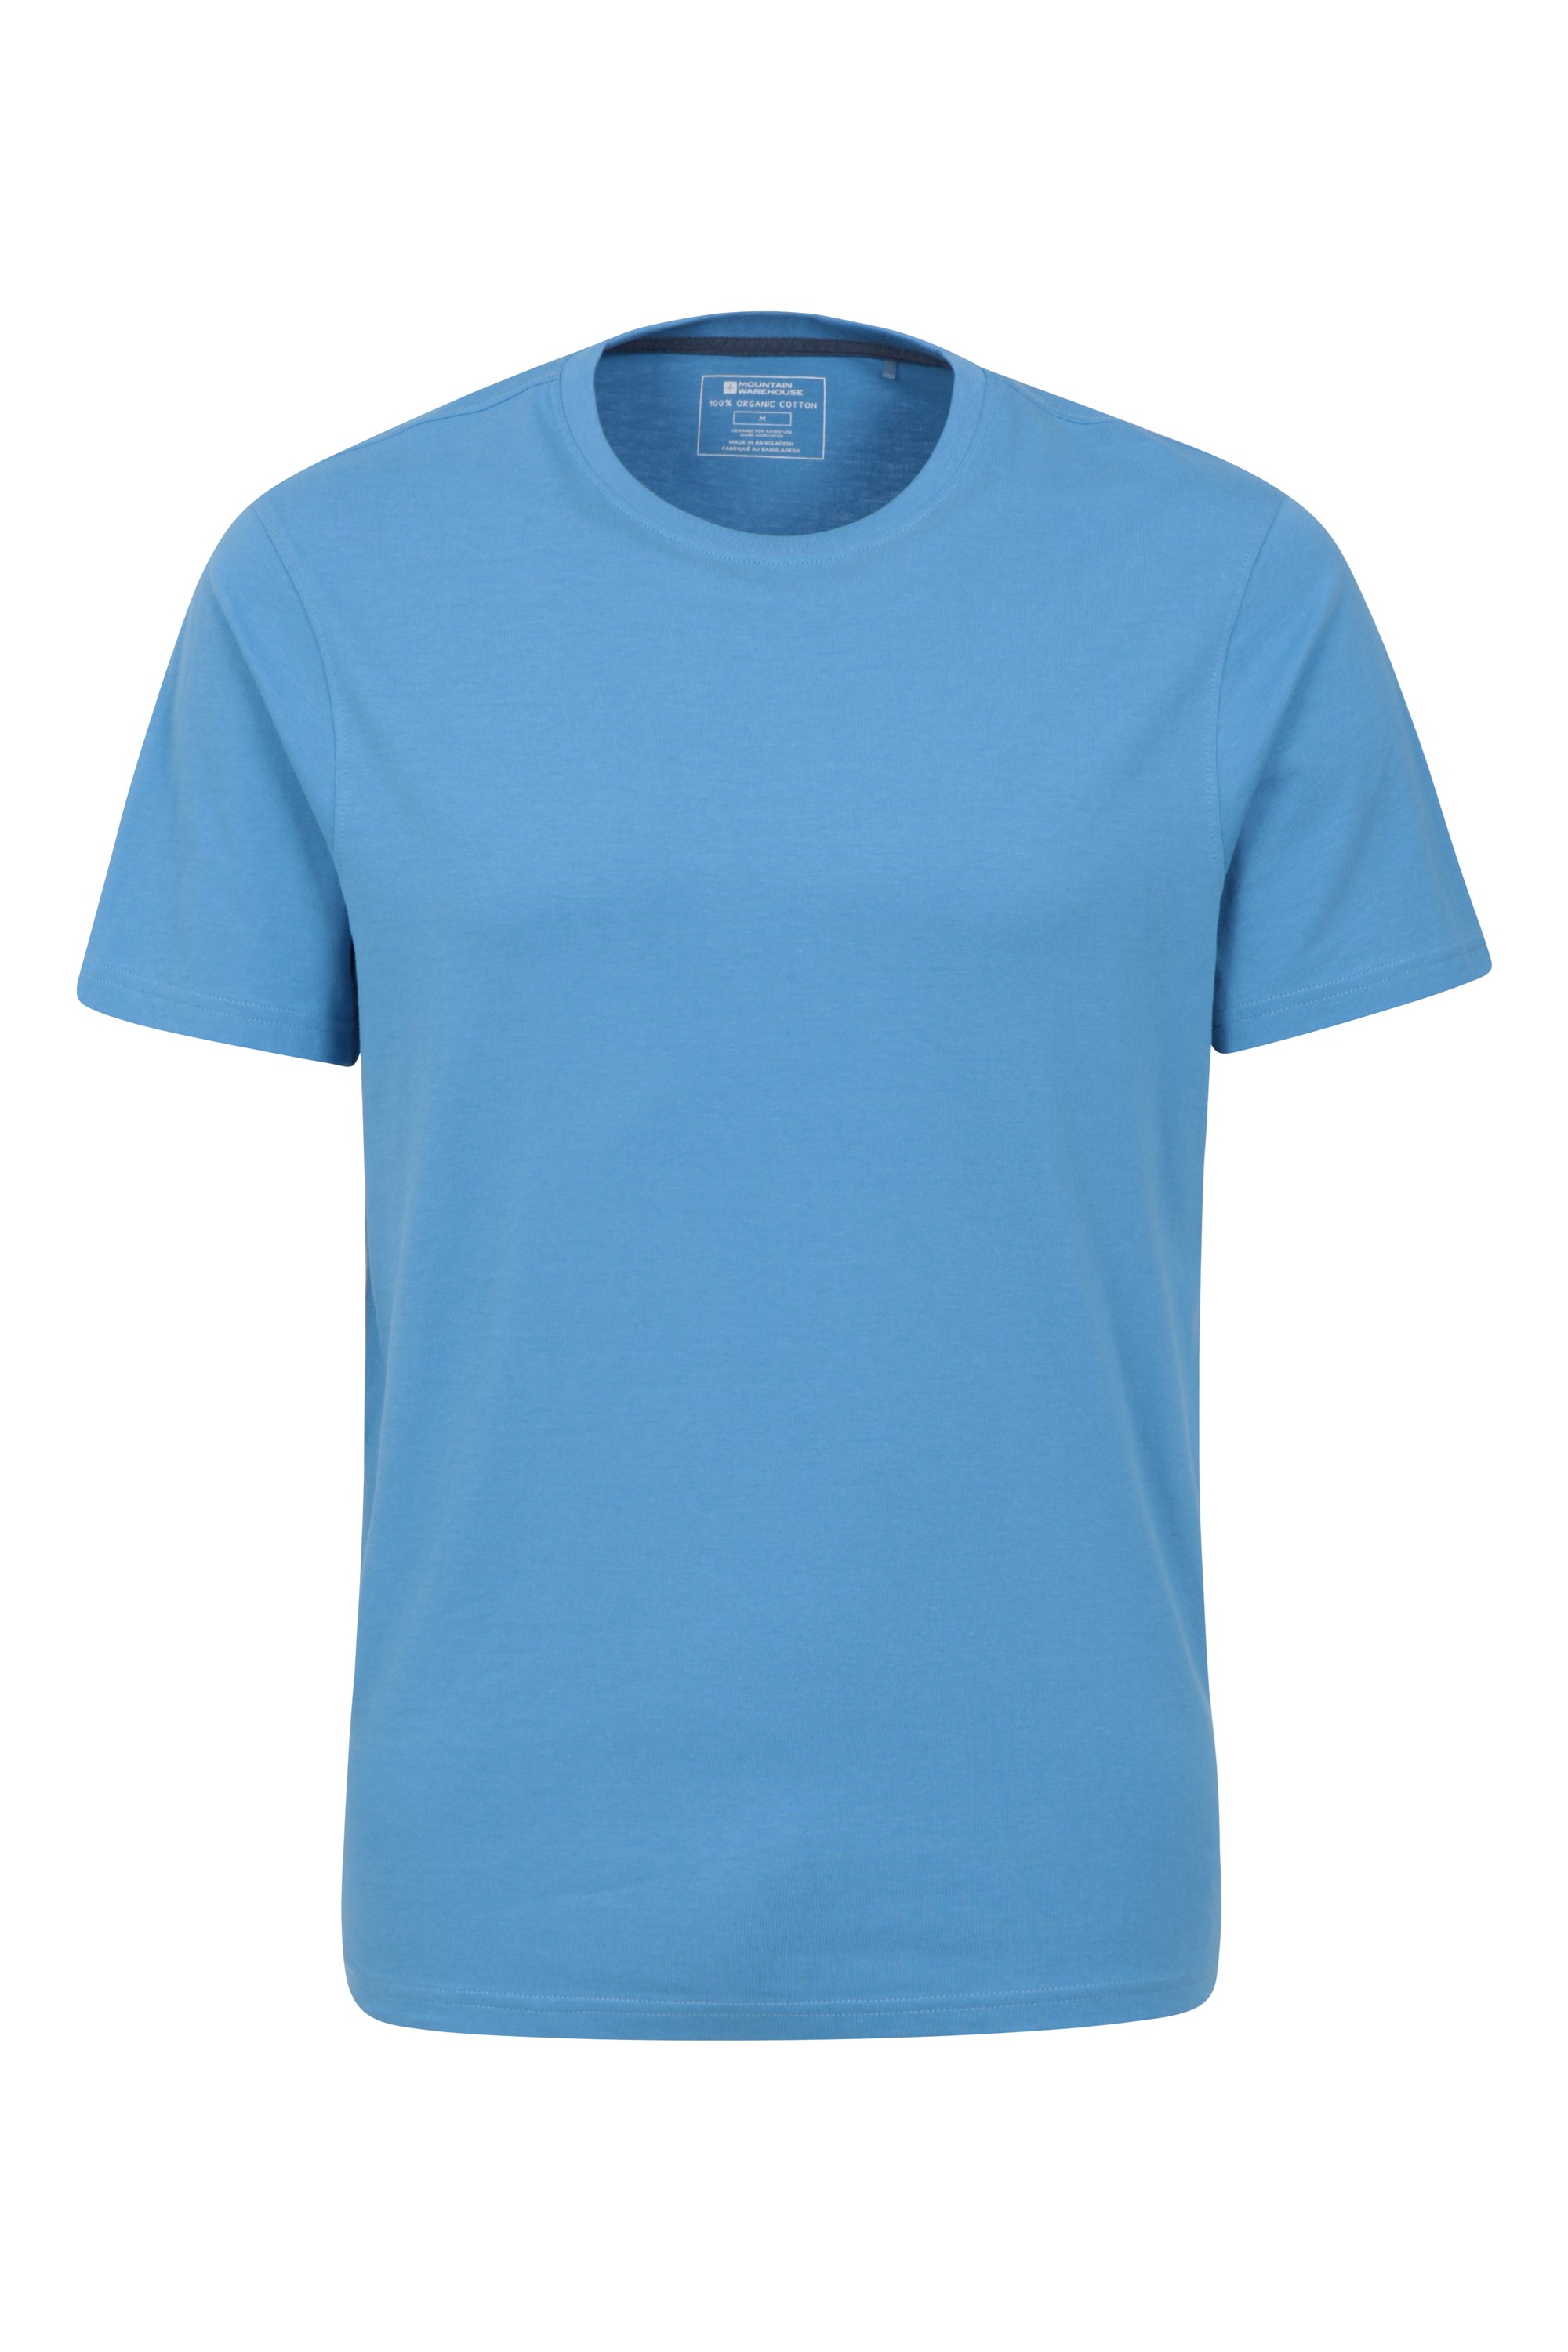 Eden Mens Organic Plain T-shirt - Blue